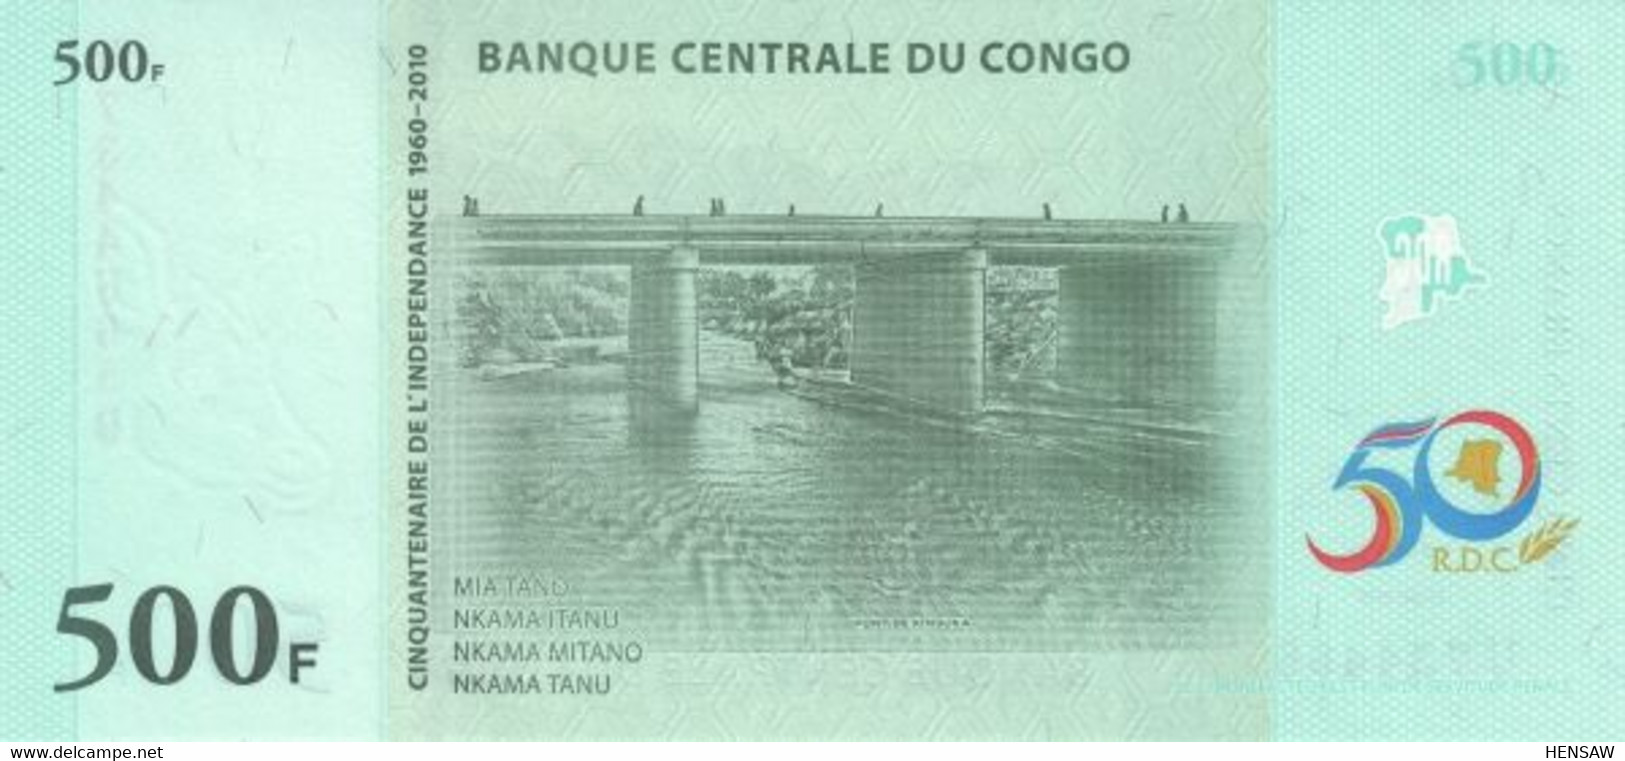 CONGO 500 FRANC 2010 P 100 UNC SC NUEVO - République Démocratique Du Congo & Zaïre